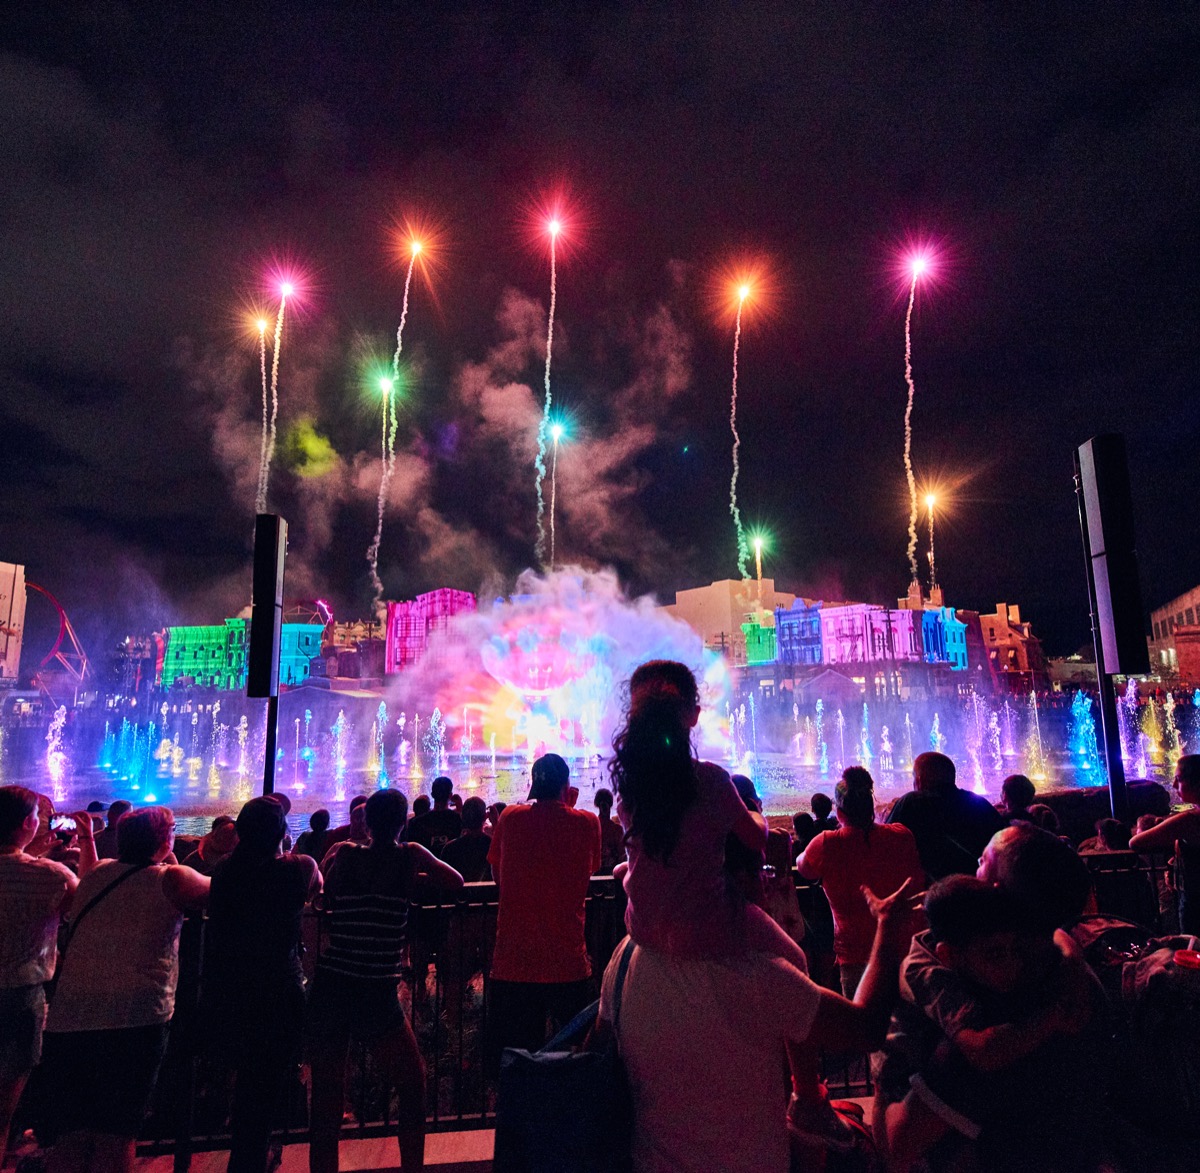 Universal Orlando's Cinematic Celebration - novo espetáculo noturno na lagoa do Universal Orlando Resort (Foto: Divulgação)